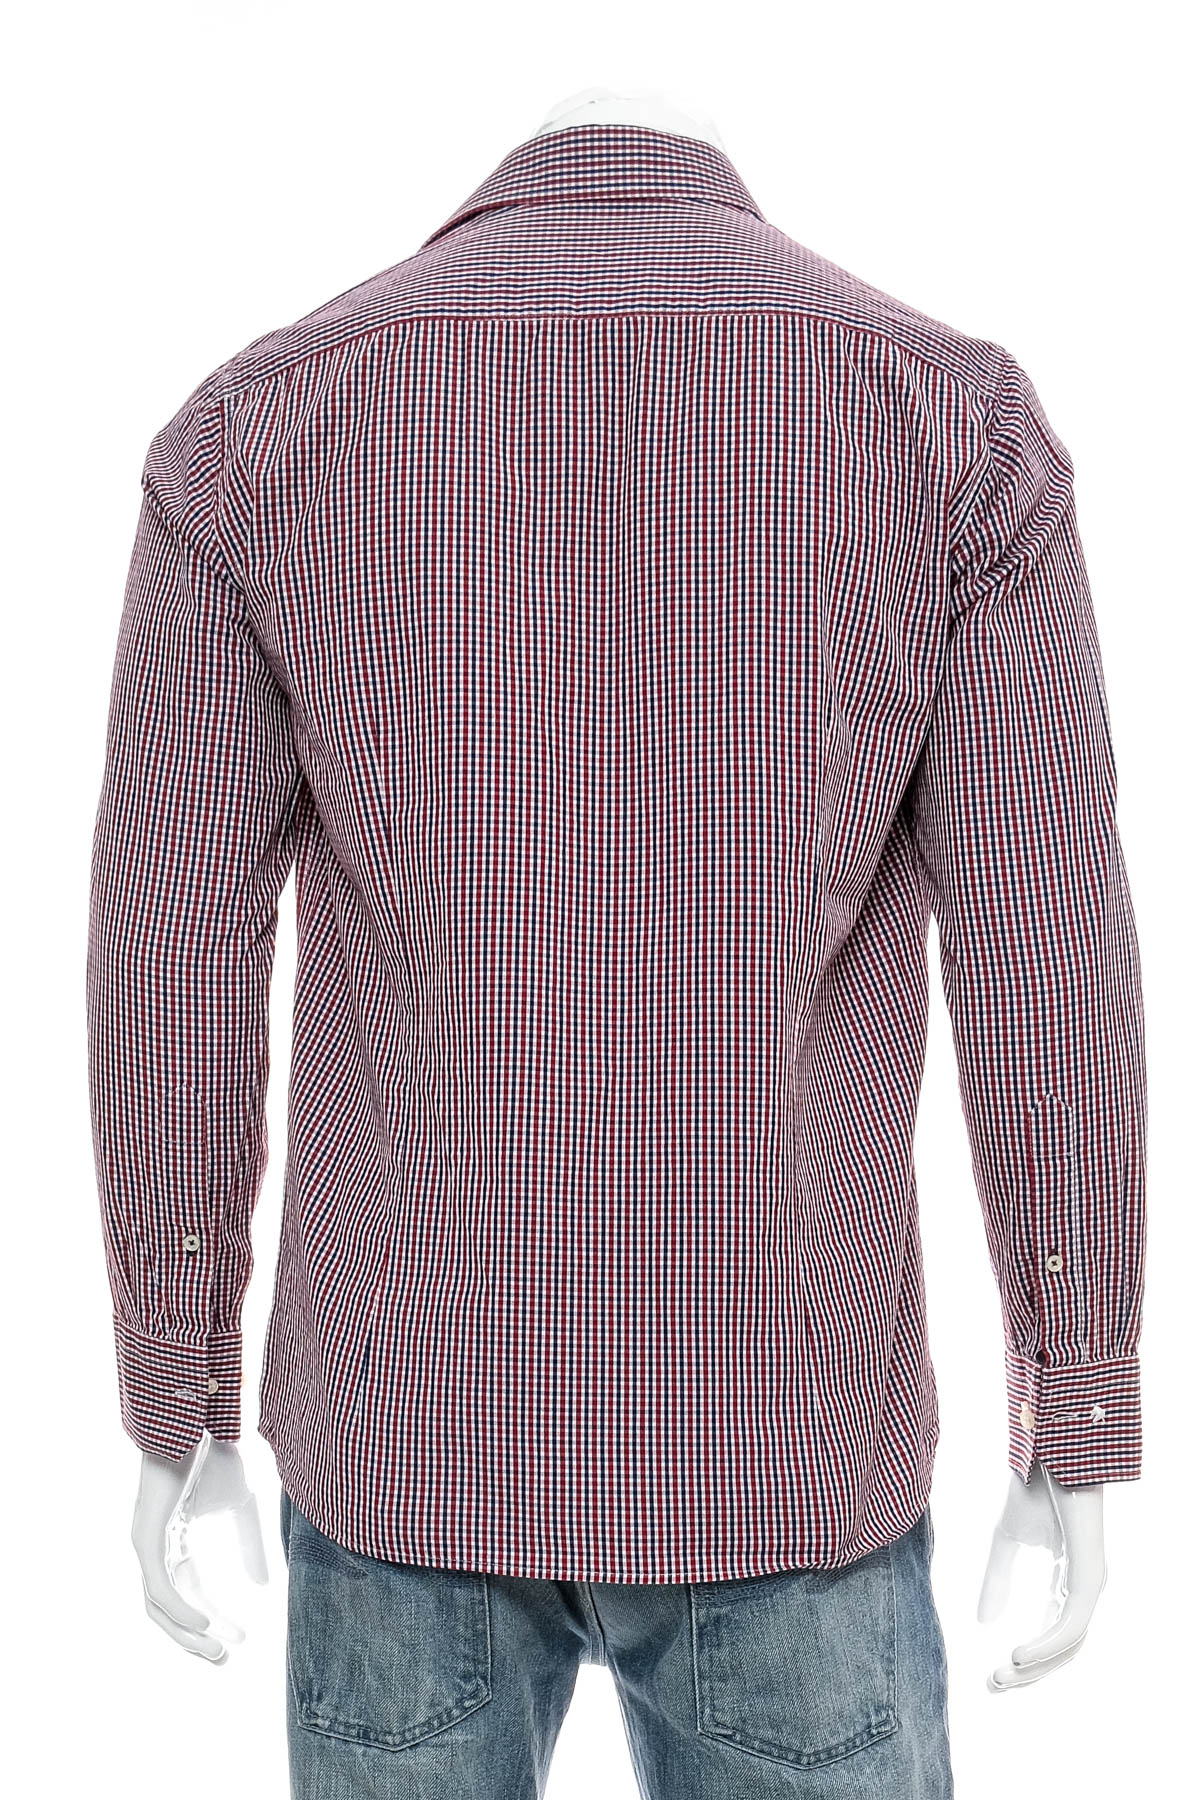 Ανδρικό πουκάμισο - Einhorn - 1